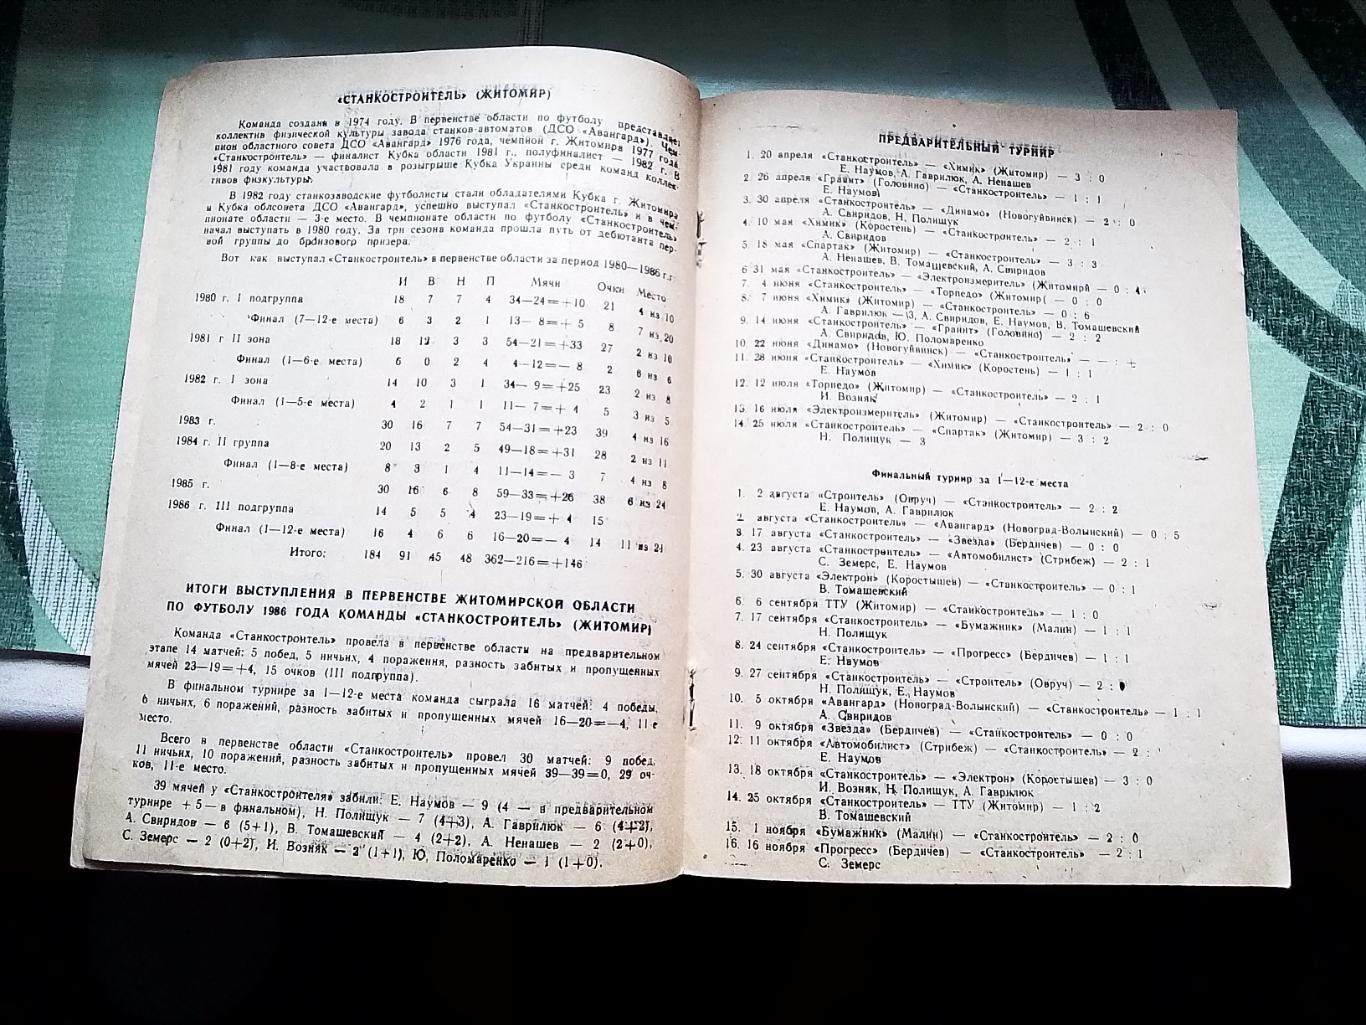 Программа сезона календарь Станкостроитель Житомир 1987 2